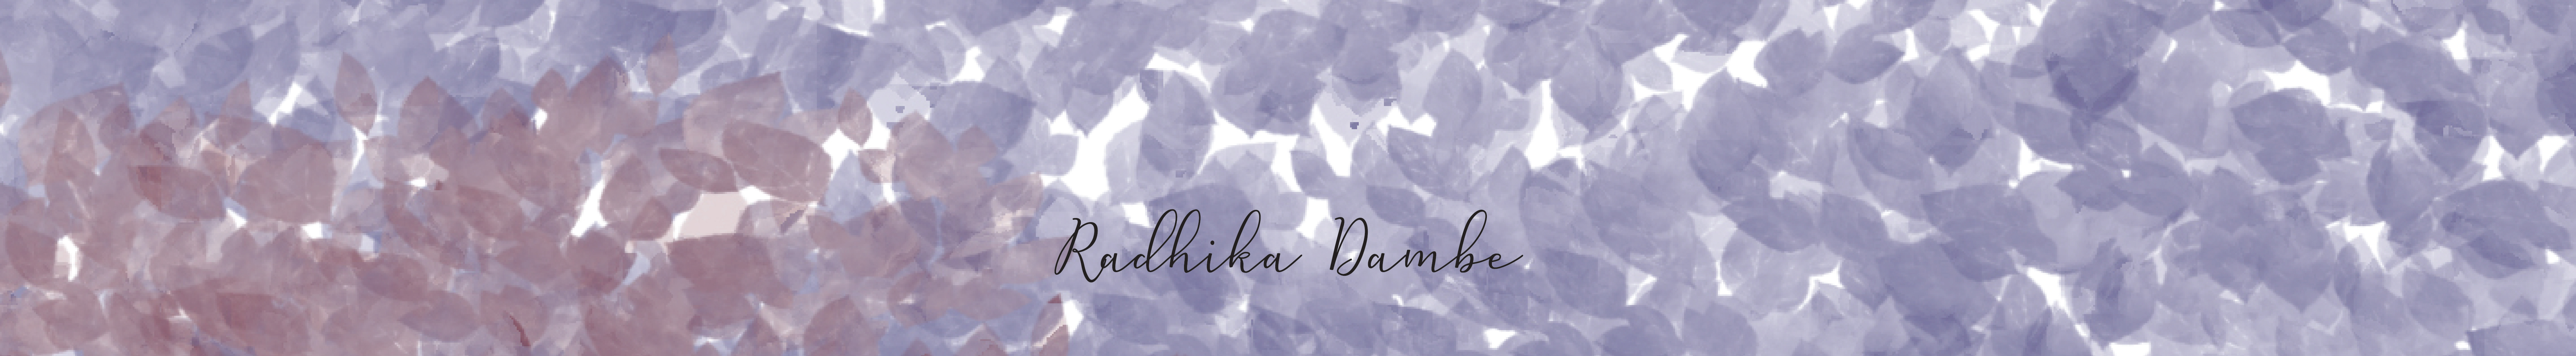 Radhika Dambe's profile banner